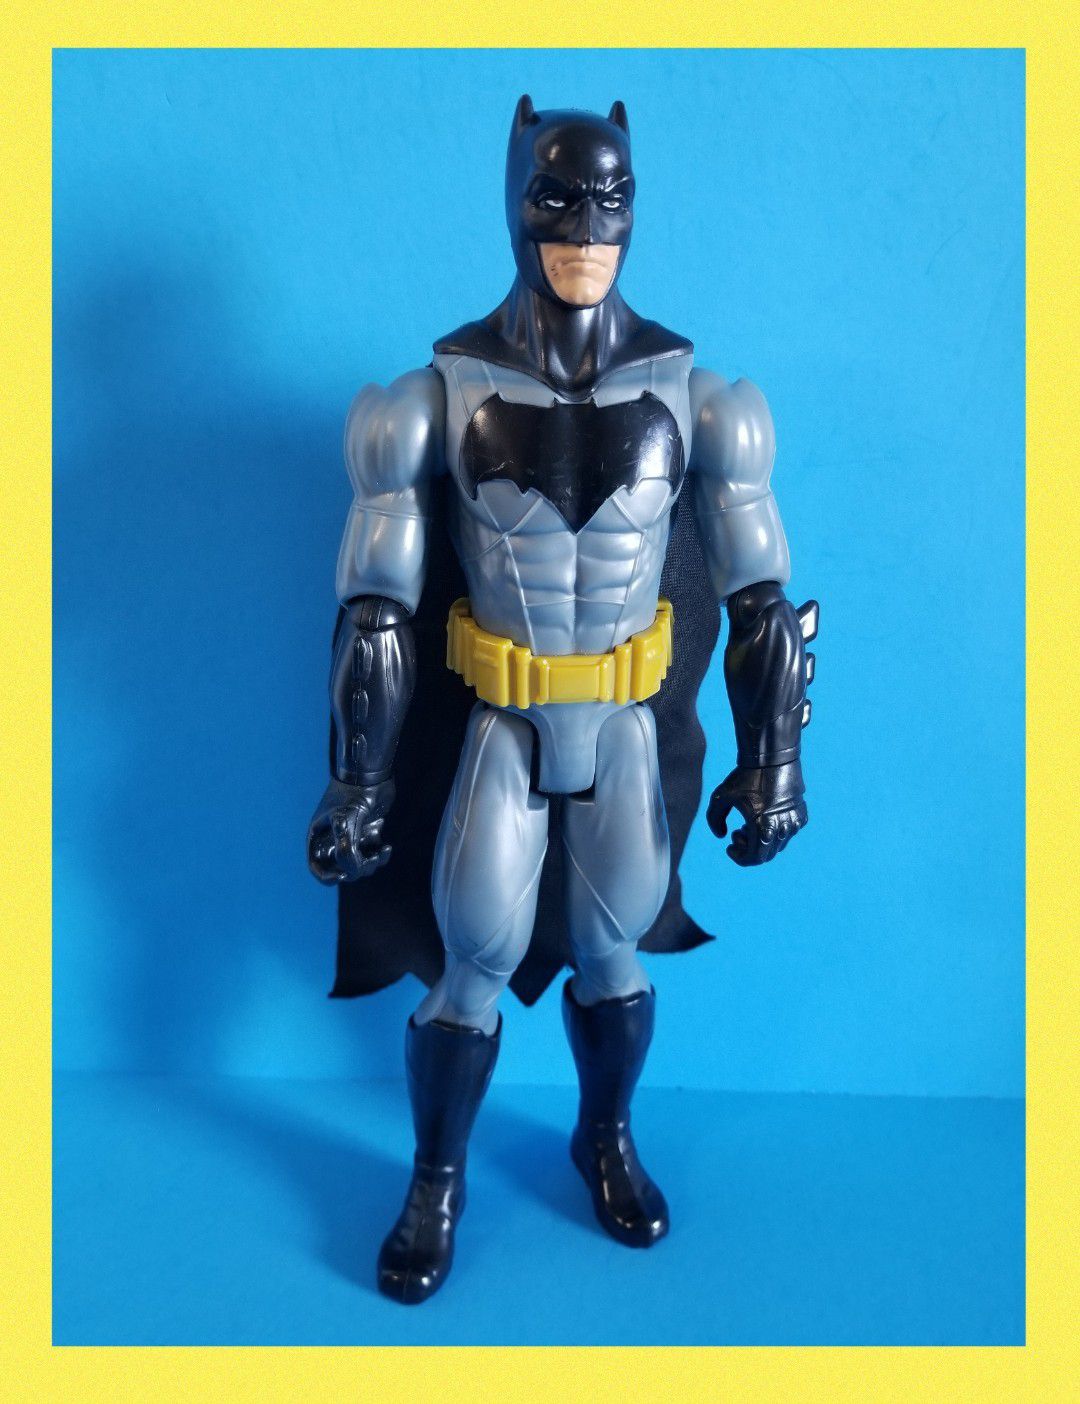 Batman Action Figure 12"